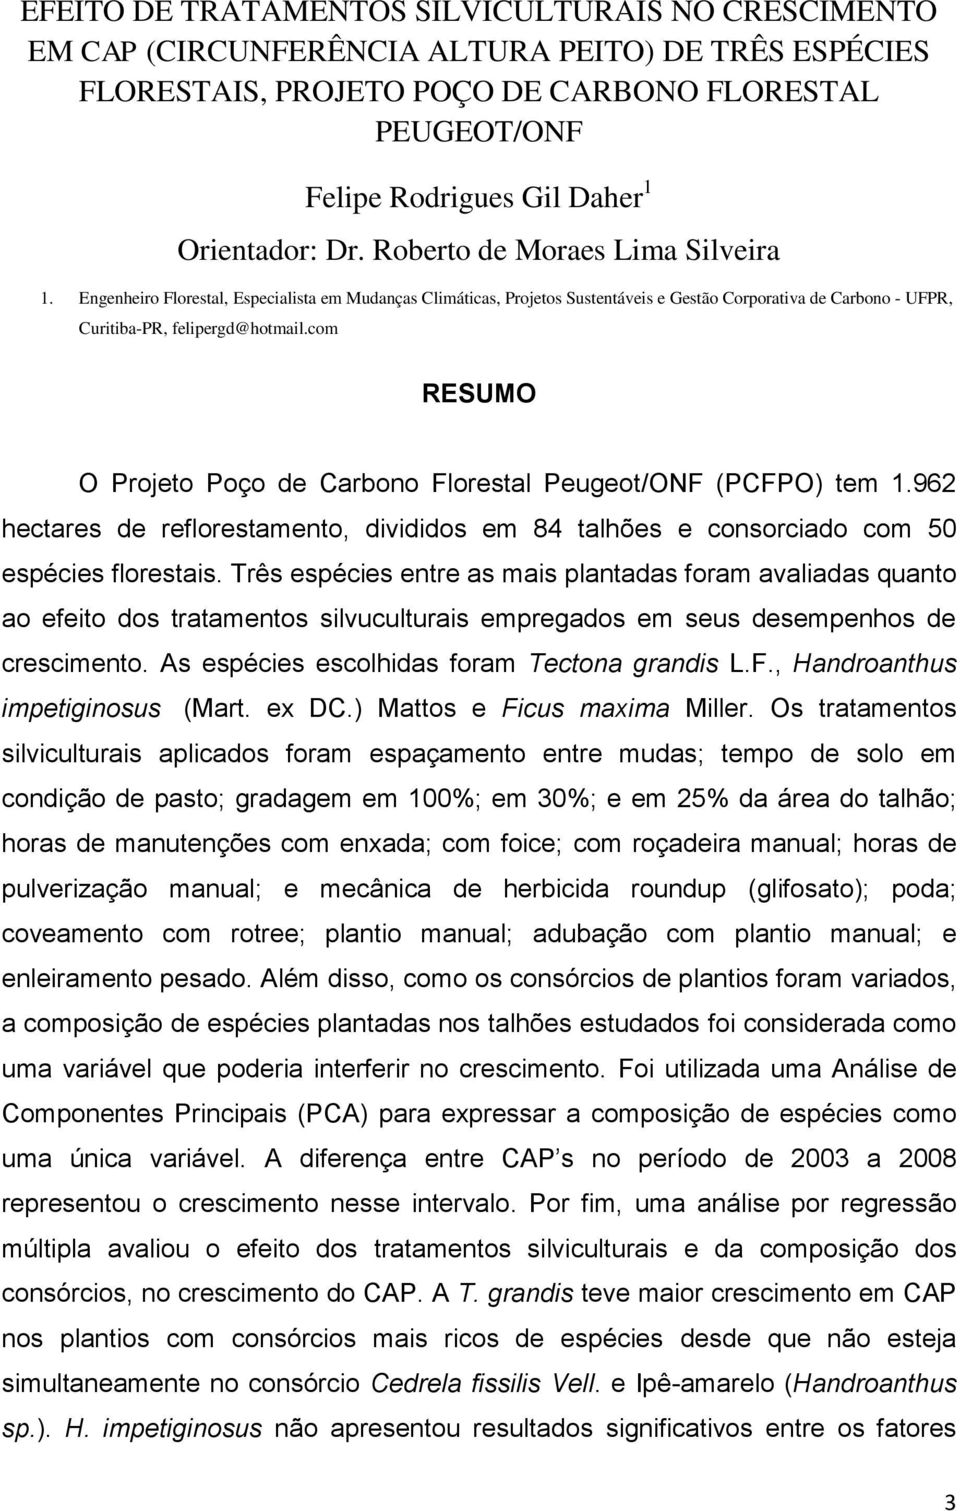 Engenheiro Florestal, Especialista em Mudanças Climáticas, Projetos Sustentáveis e Gestão Corporativa de Carbono - UFPR, Curitiba-PR, felipergd@hotmail.